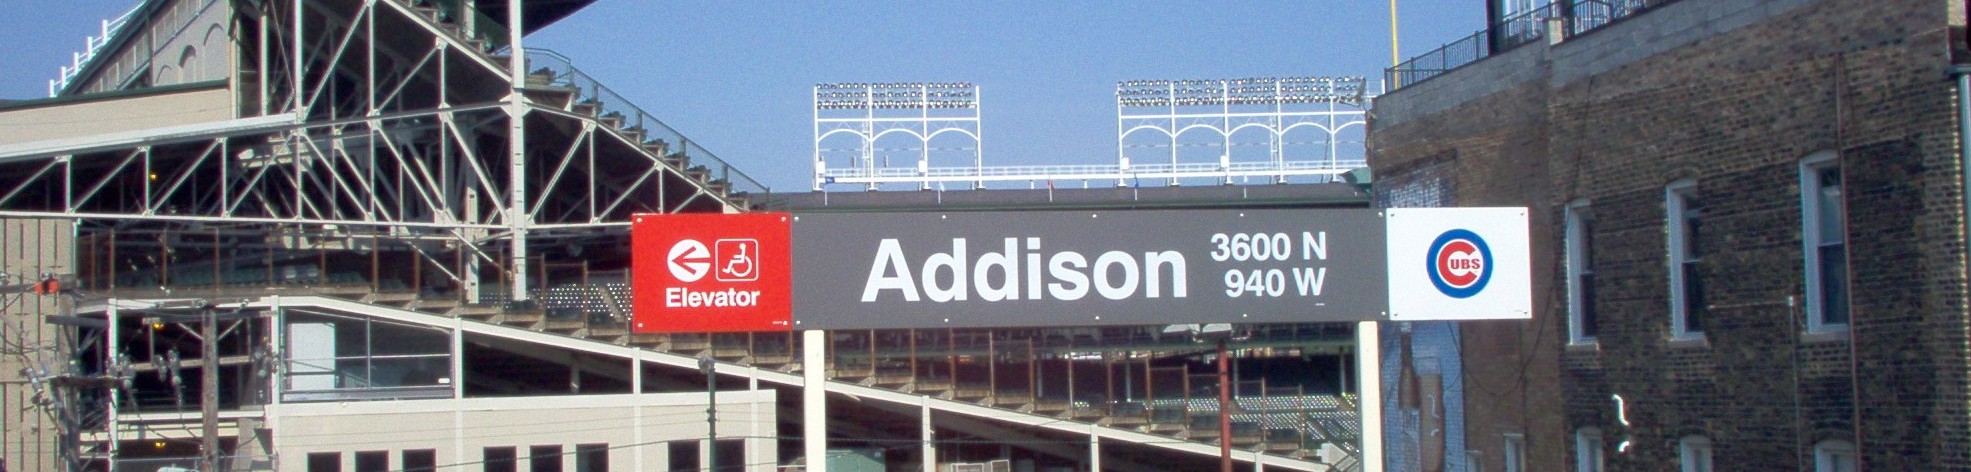 Addison stop